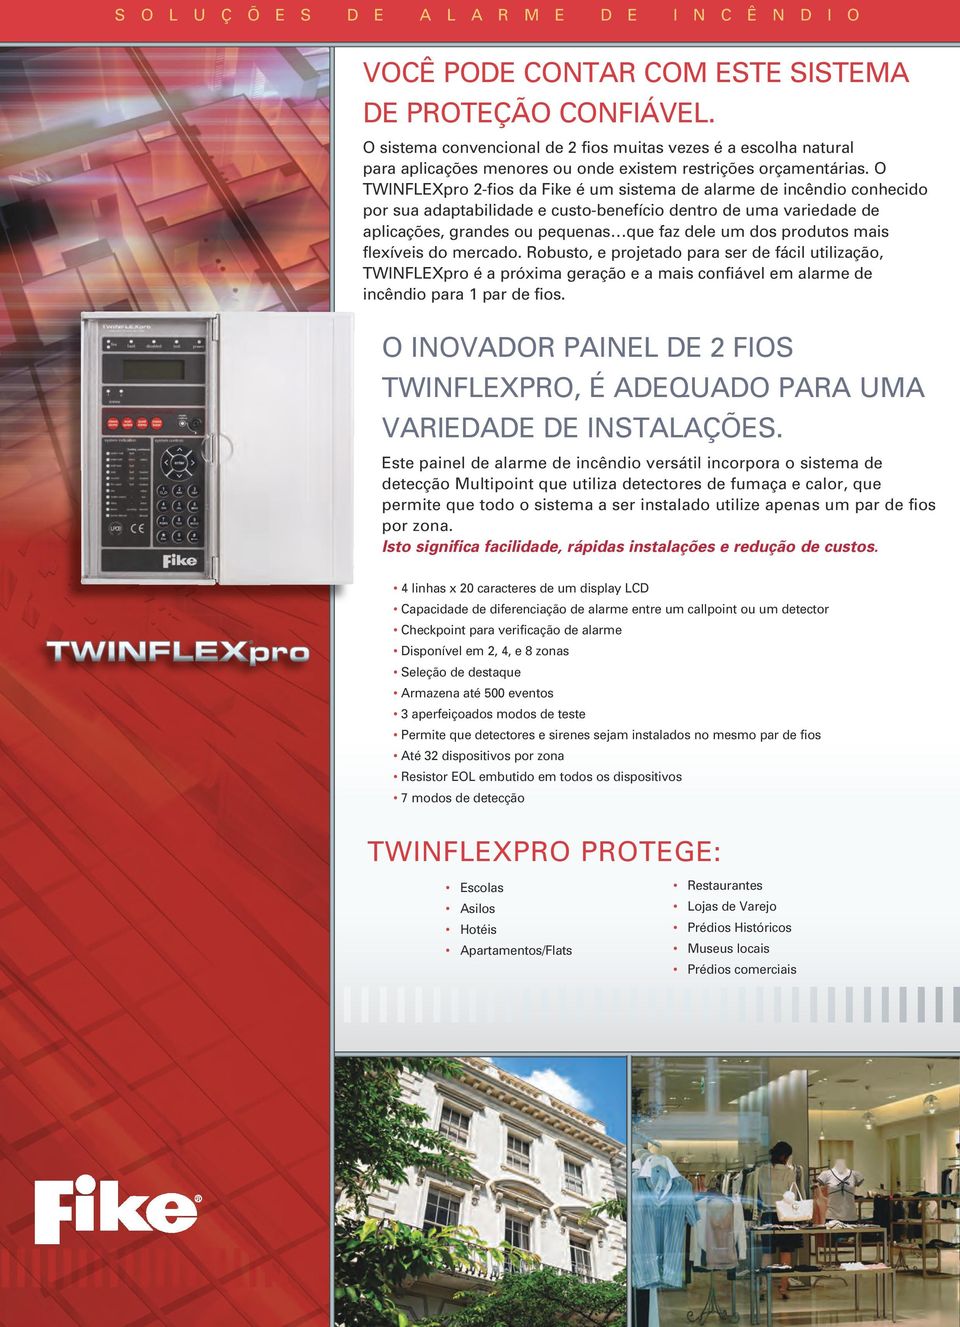 produtos mais flexíveis do mercado. Robusto, e projetado para ser de fácil utilização, TWINFLEXpro é a próxima geração e a mais confiável em alarme de incêndio para 1 par de fios.